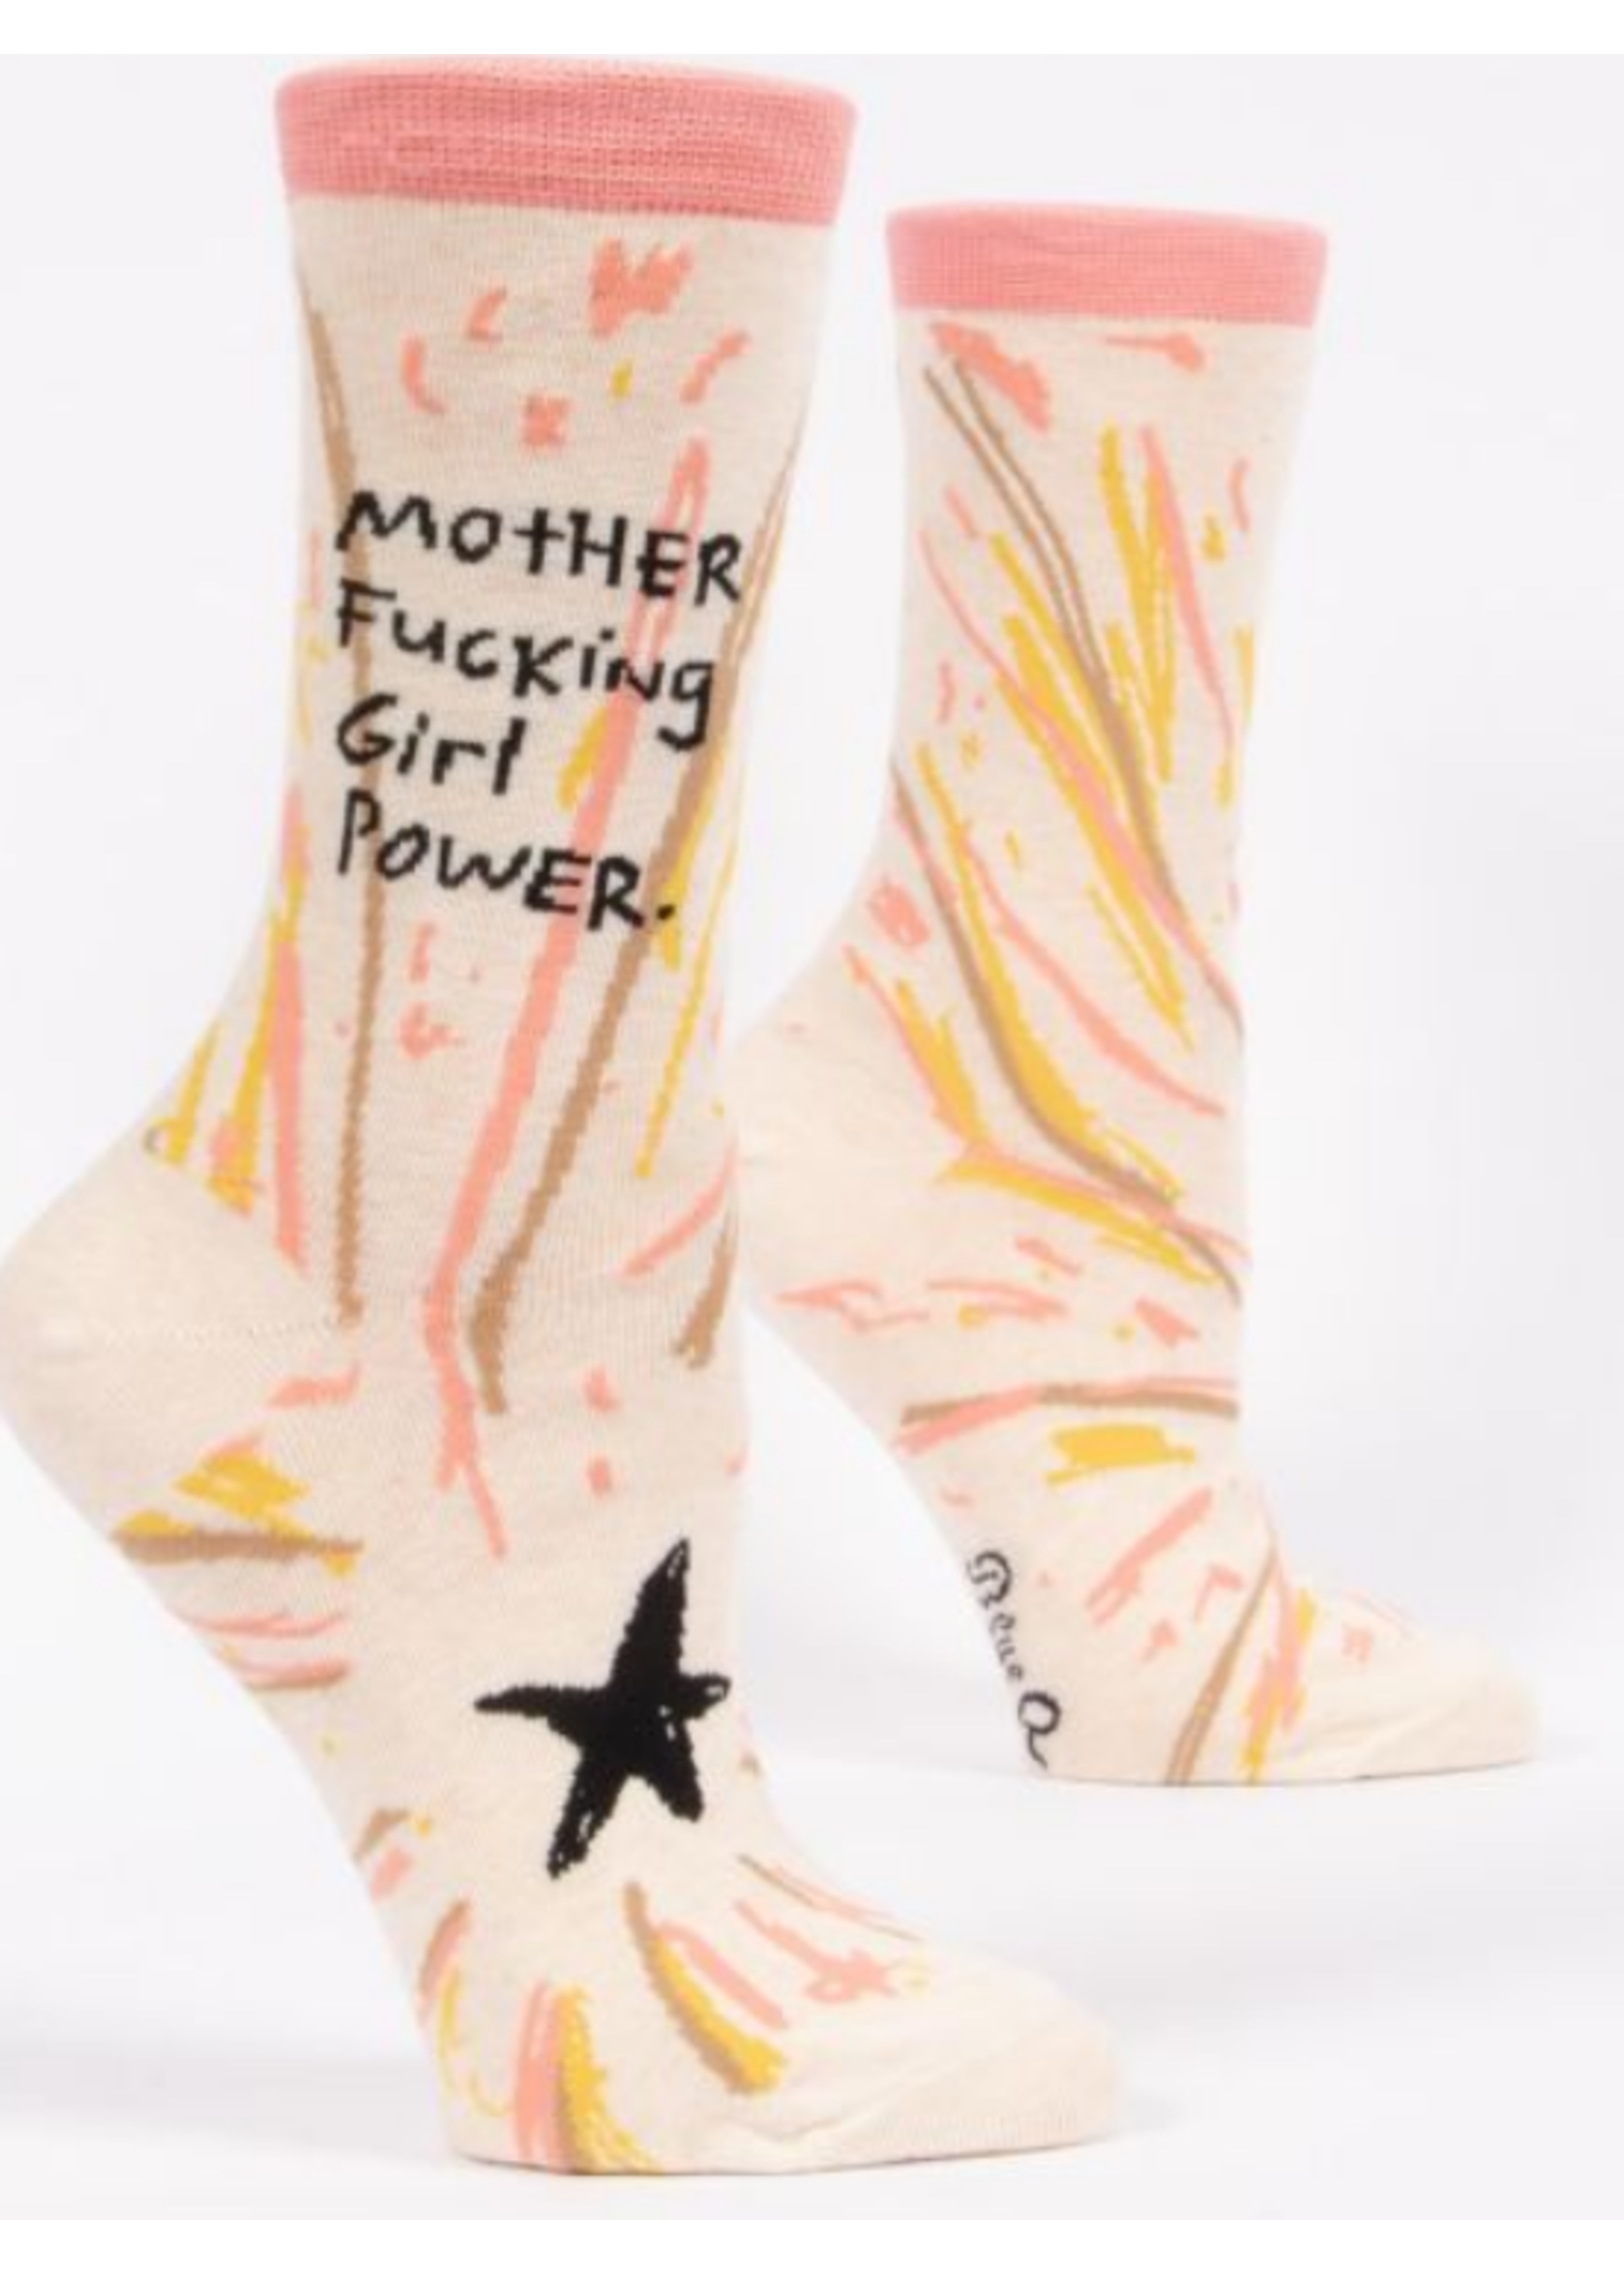 Blue Q Mother Fucking Girl Power socks